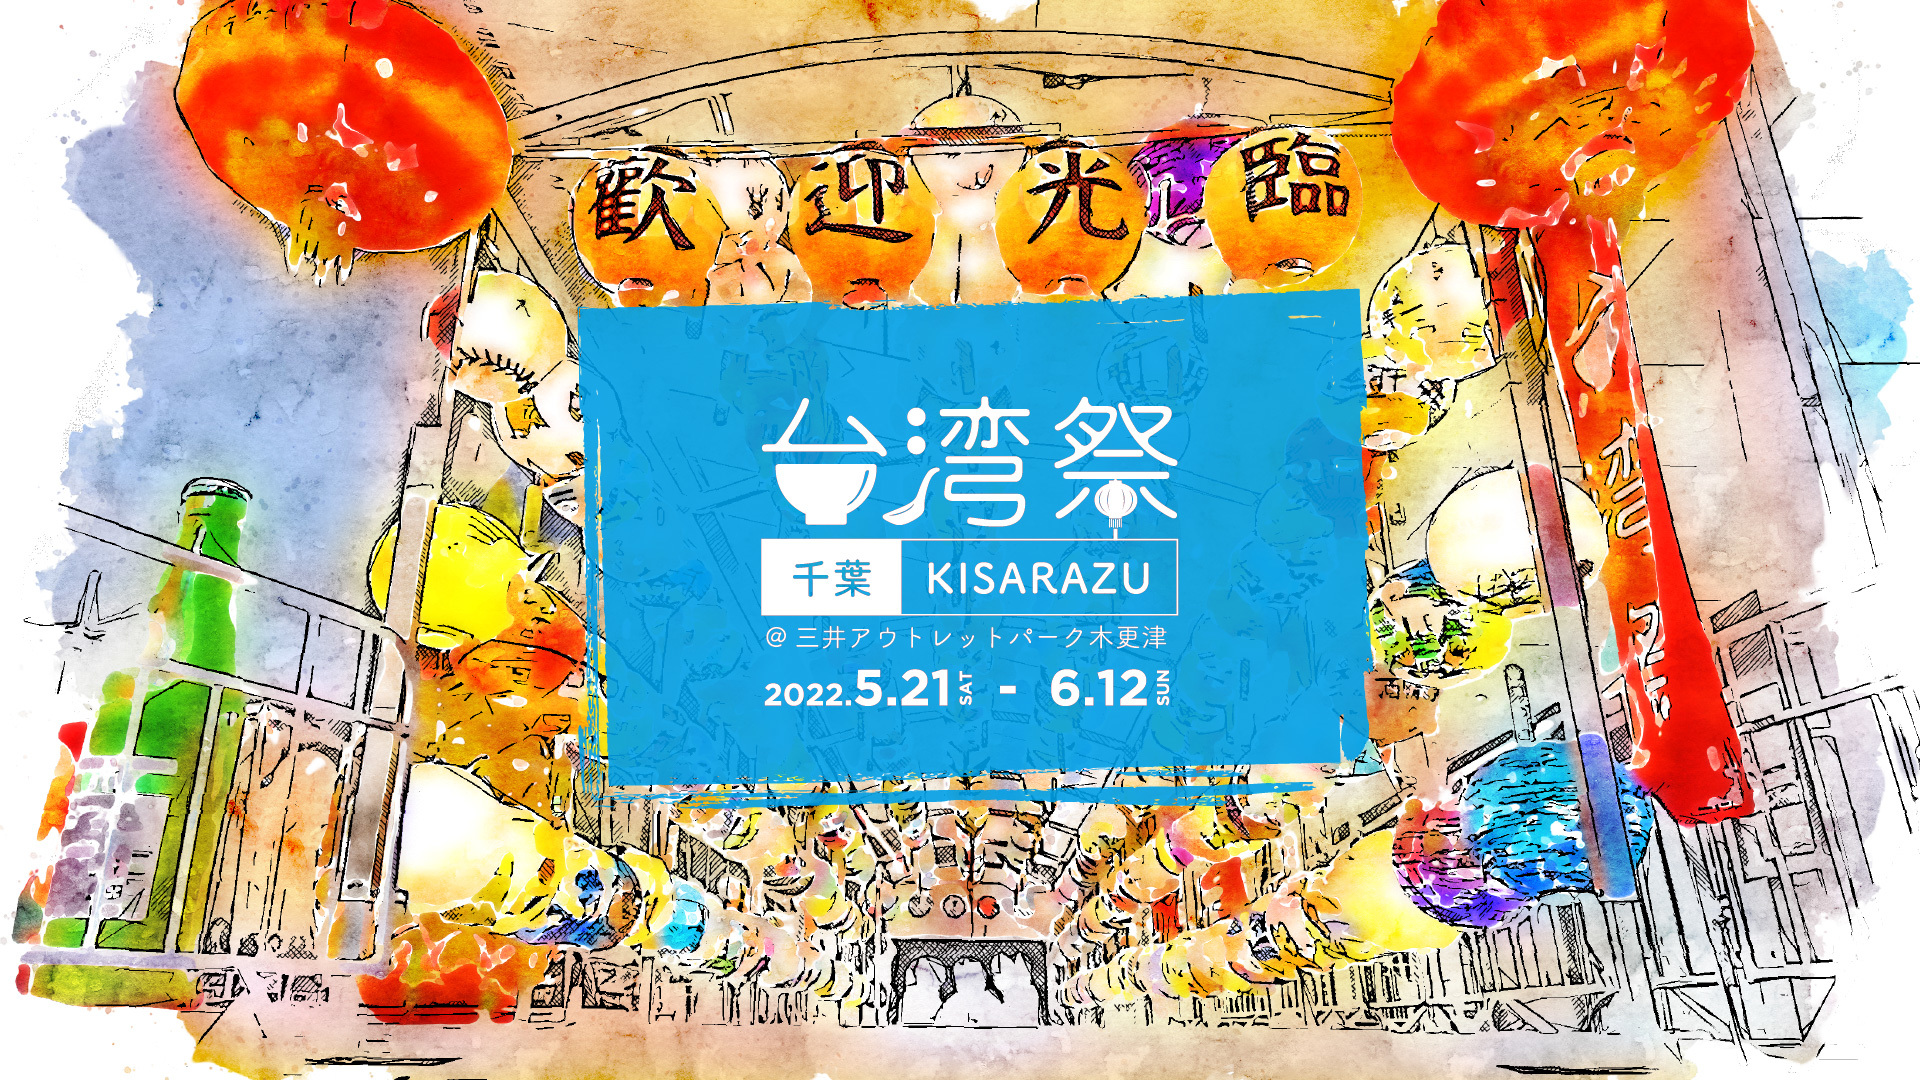 18種類の材料を使った生姜焼きの店「生姜キング」が神田神保町に
新しく4月にオープン　5月末までキャンペーンも開催